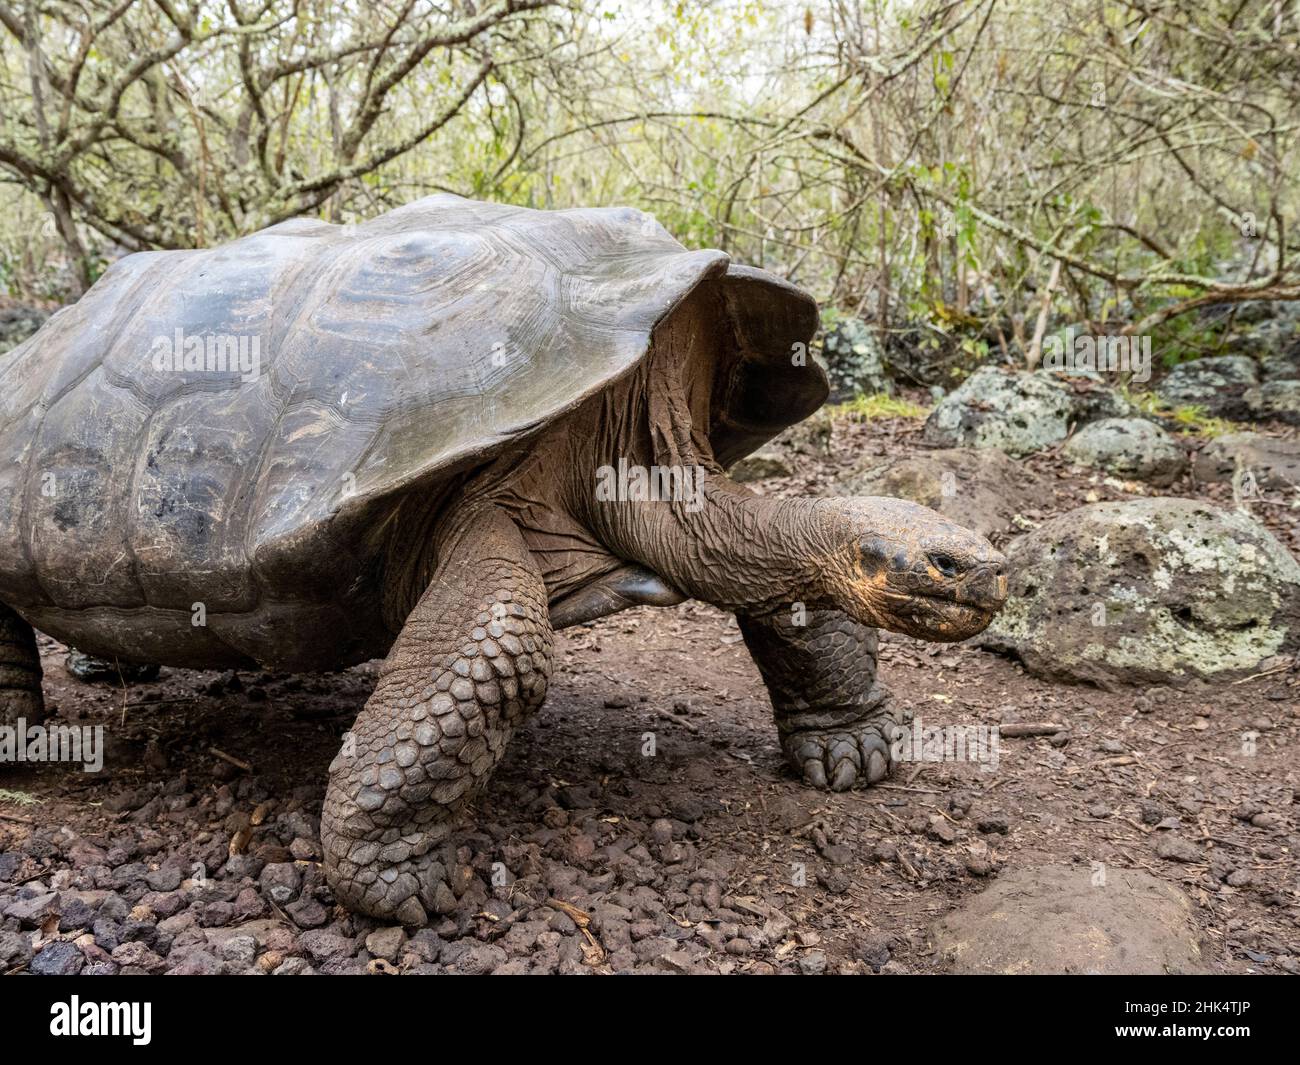 Une tortue géante des Galapagos (Chelonoidis spp), parc national des Galapagos, île de San Cristobal, Galapagos, Equateur,Amérique du Sud Banque D'Images